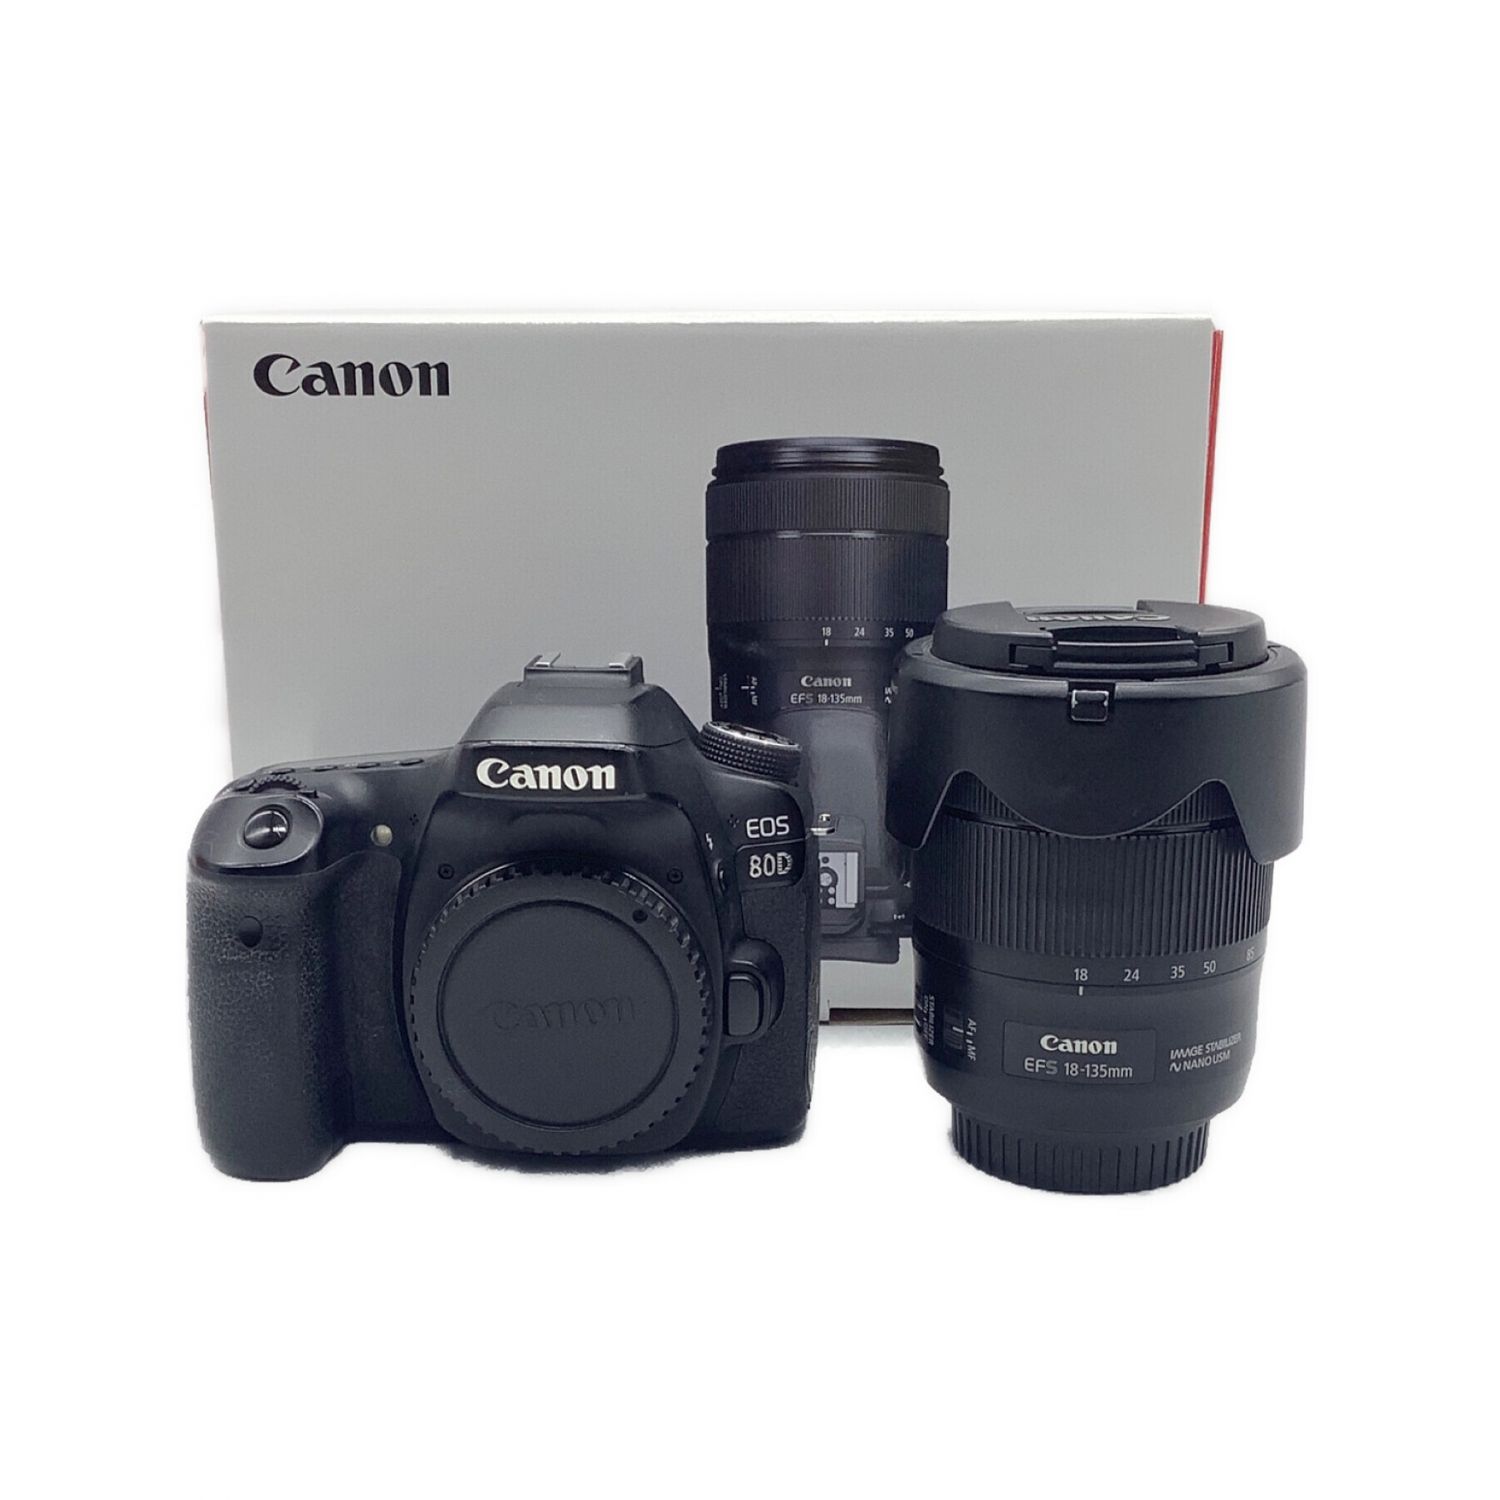 CANON (キャノン) デジタル一眼レフカメラ レンズ EFS-18-135mm付属